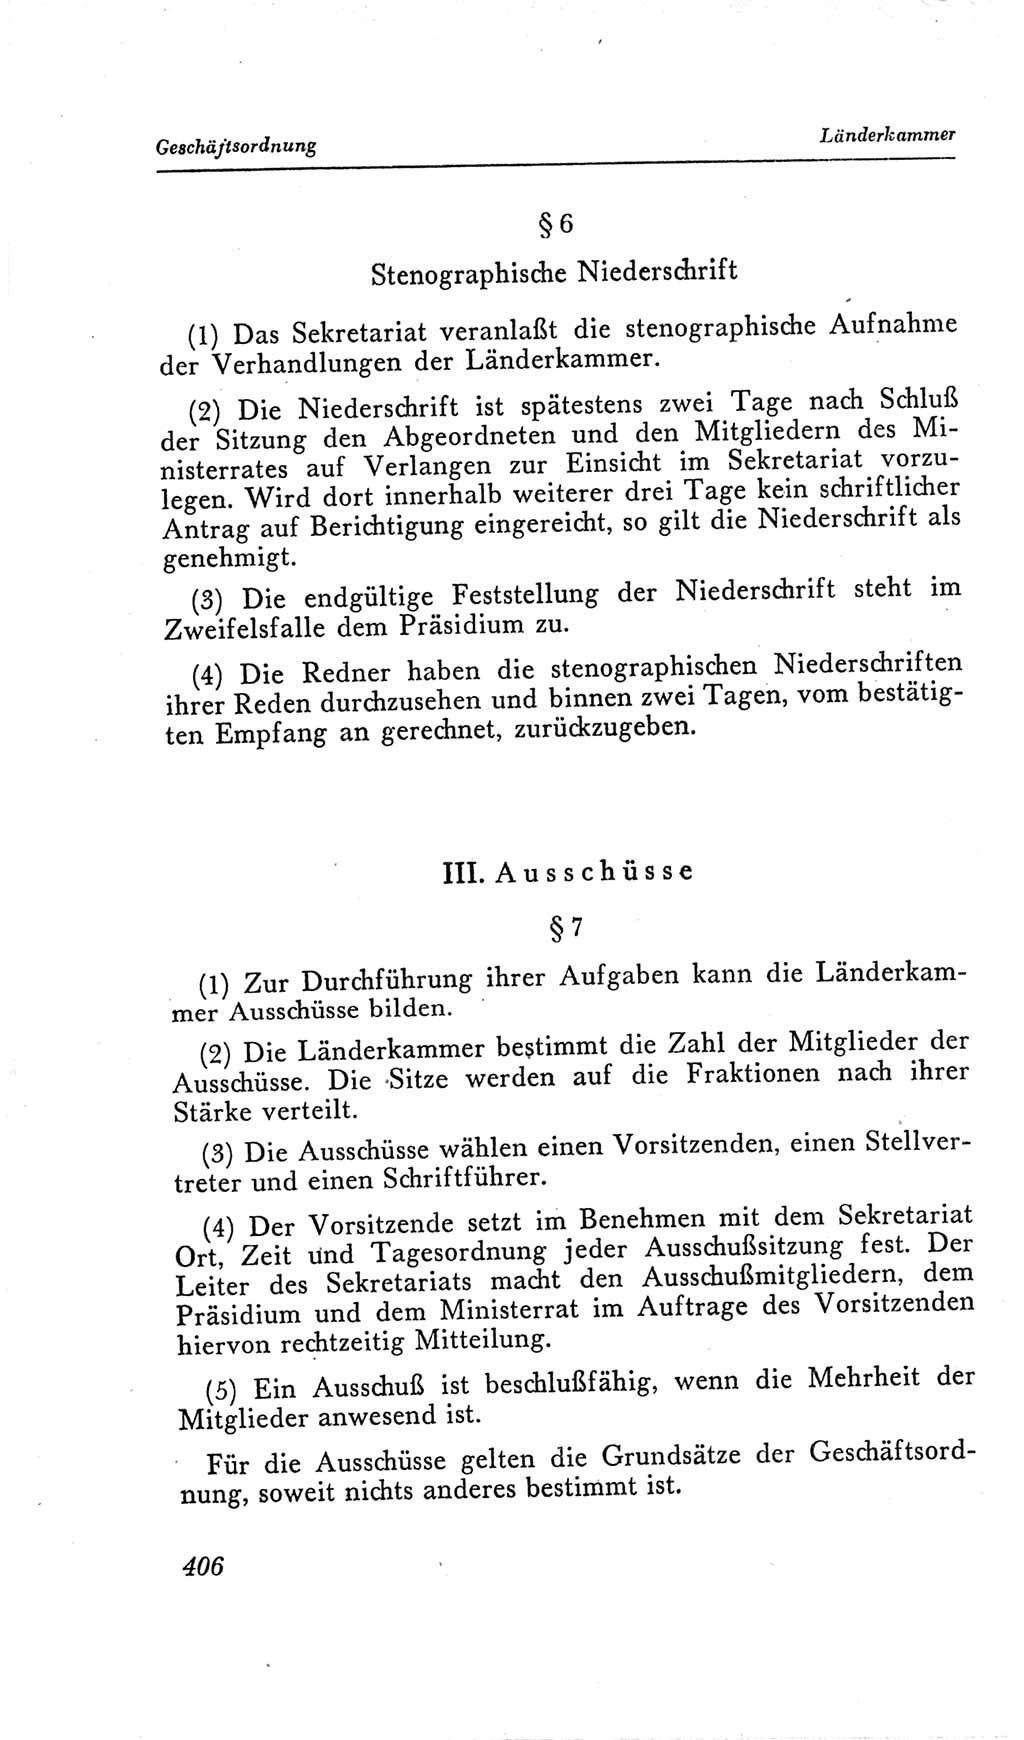 Handbuch der Volkskammer (VK) der Deutschen Demokratischen Republik (DDR), 2. Wahlperiode 1954-1958, Seite 406 (Hdb. VK. DDR, 2. WP. 1954-1958, S. 406)